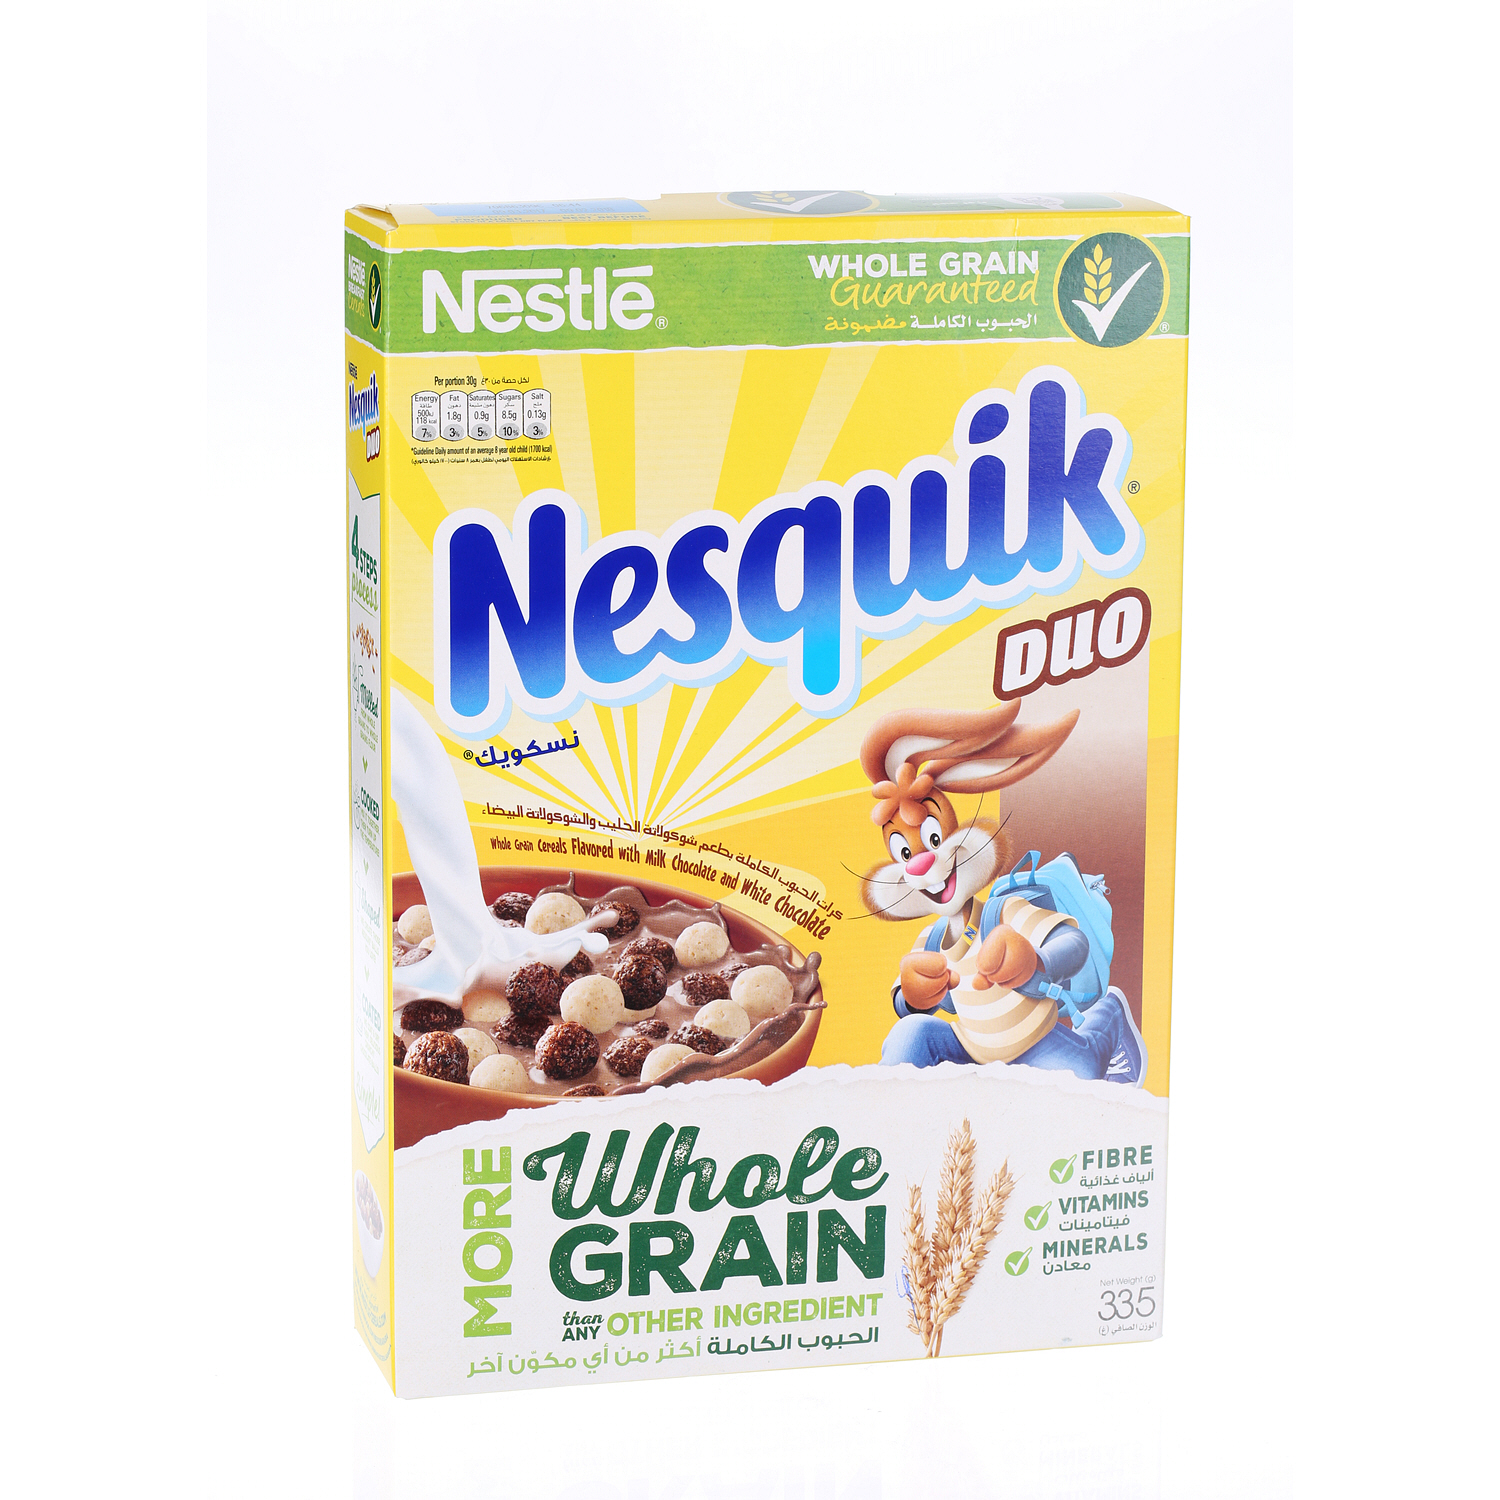 Nestlé Nesquick Duo Cereal 335 g